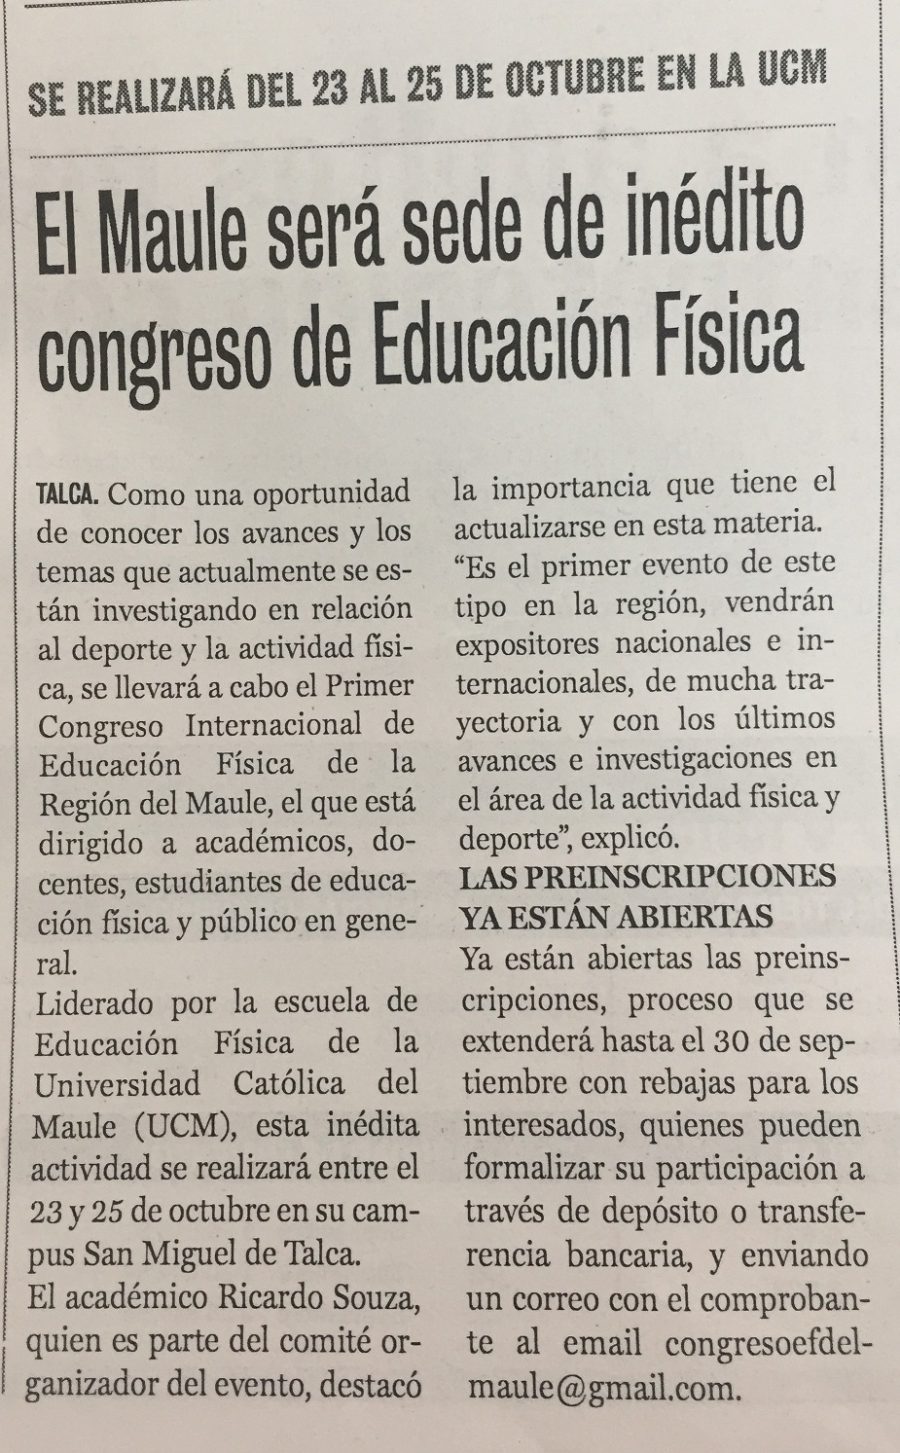 22 de septiembre en Diario La Prensa: “El Maule será sede de inédito congreso de Educación Física”